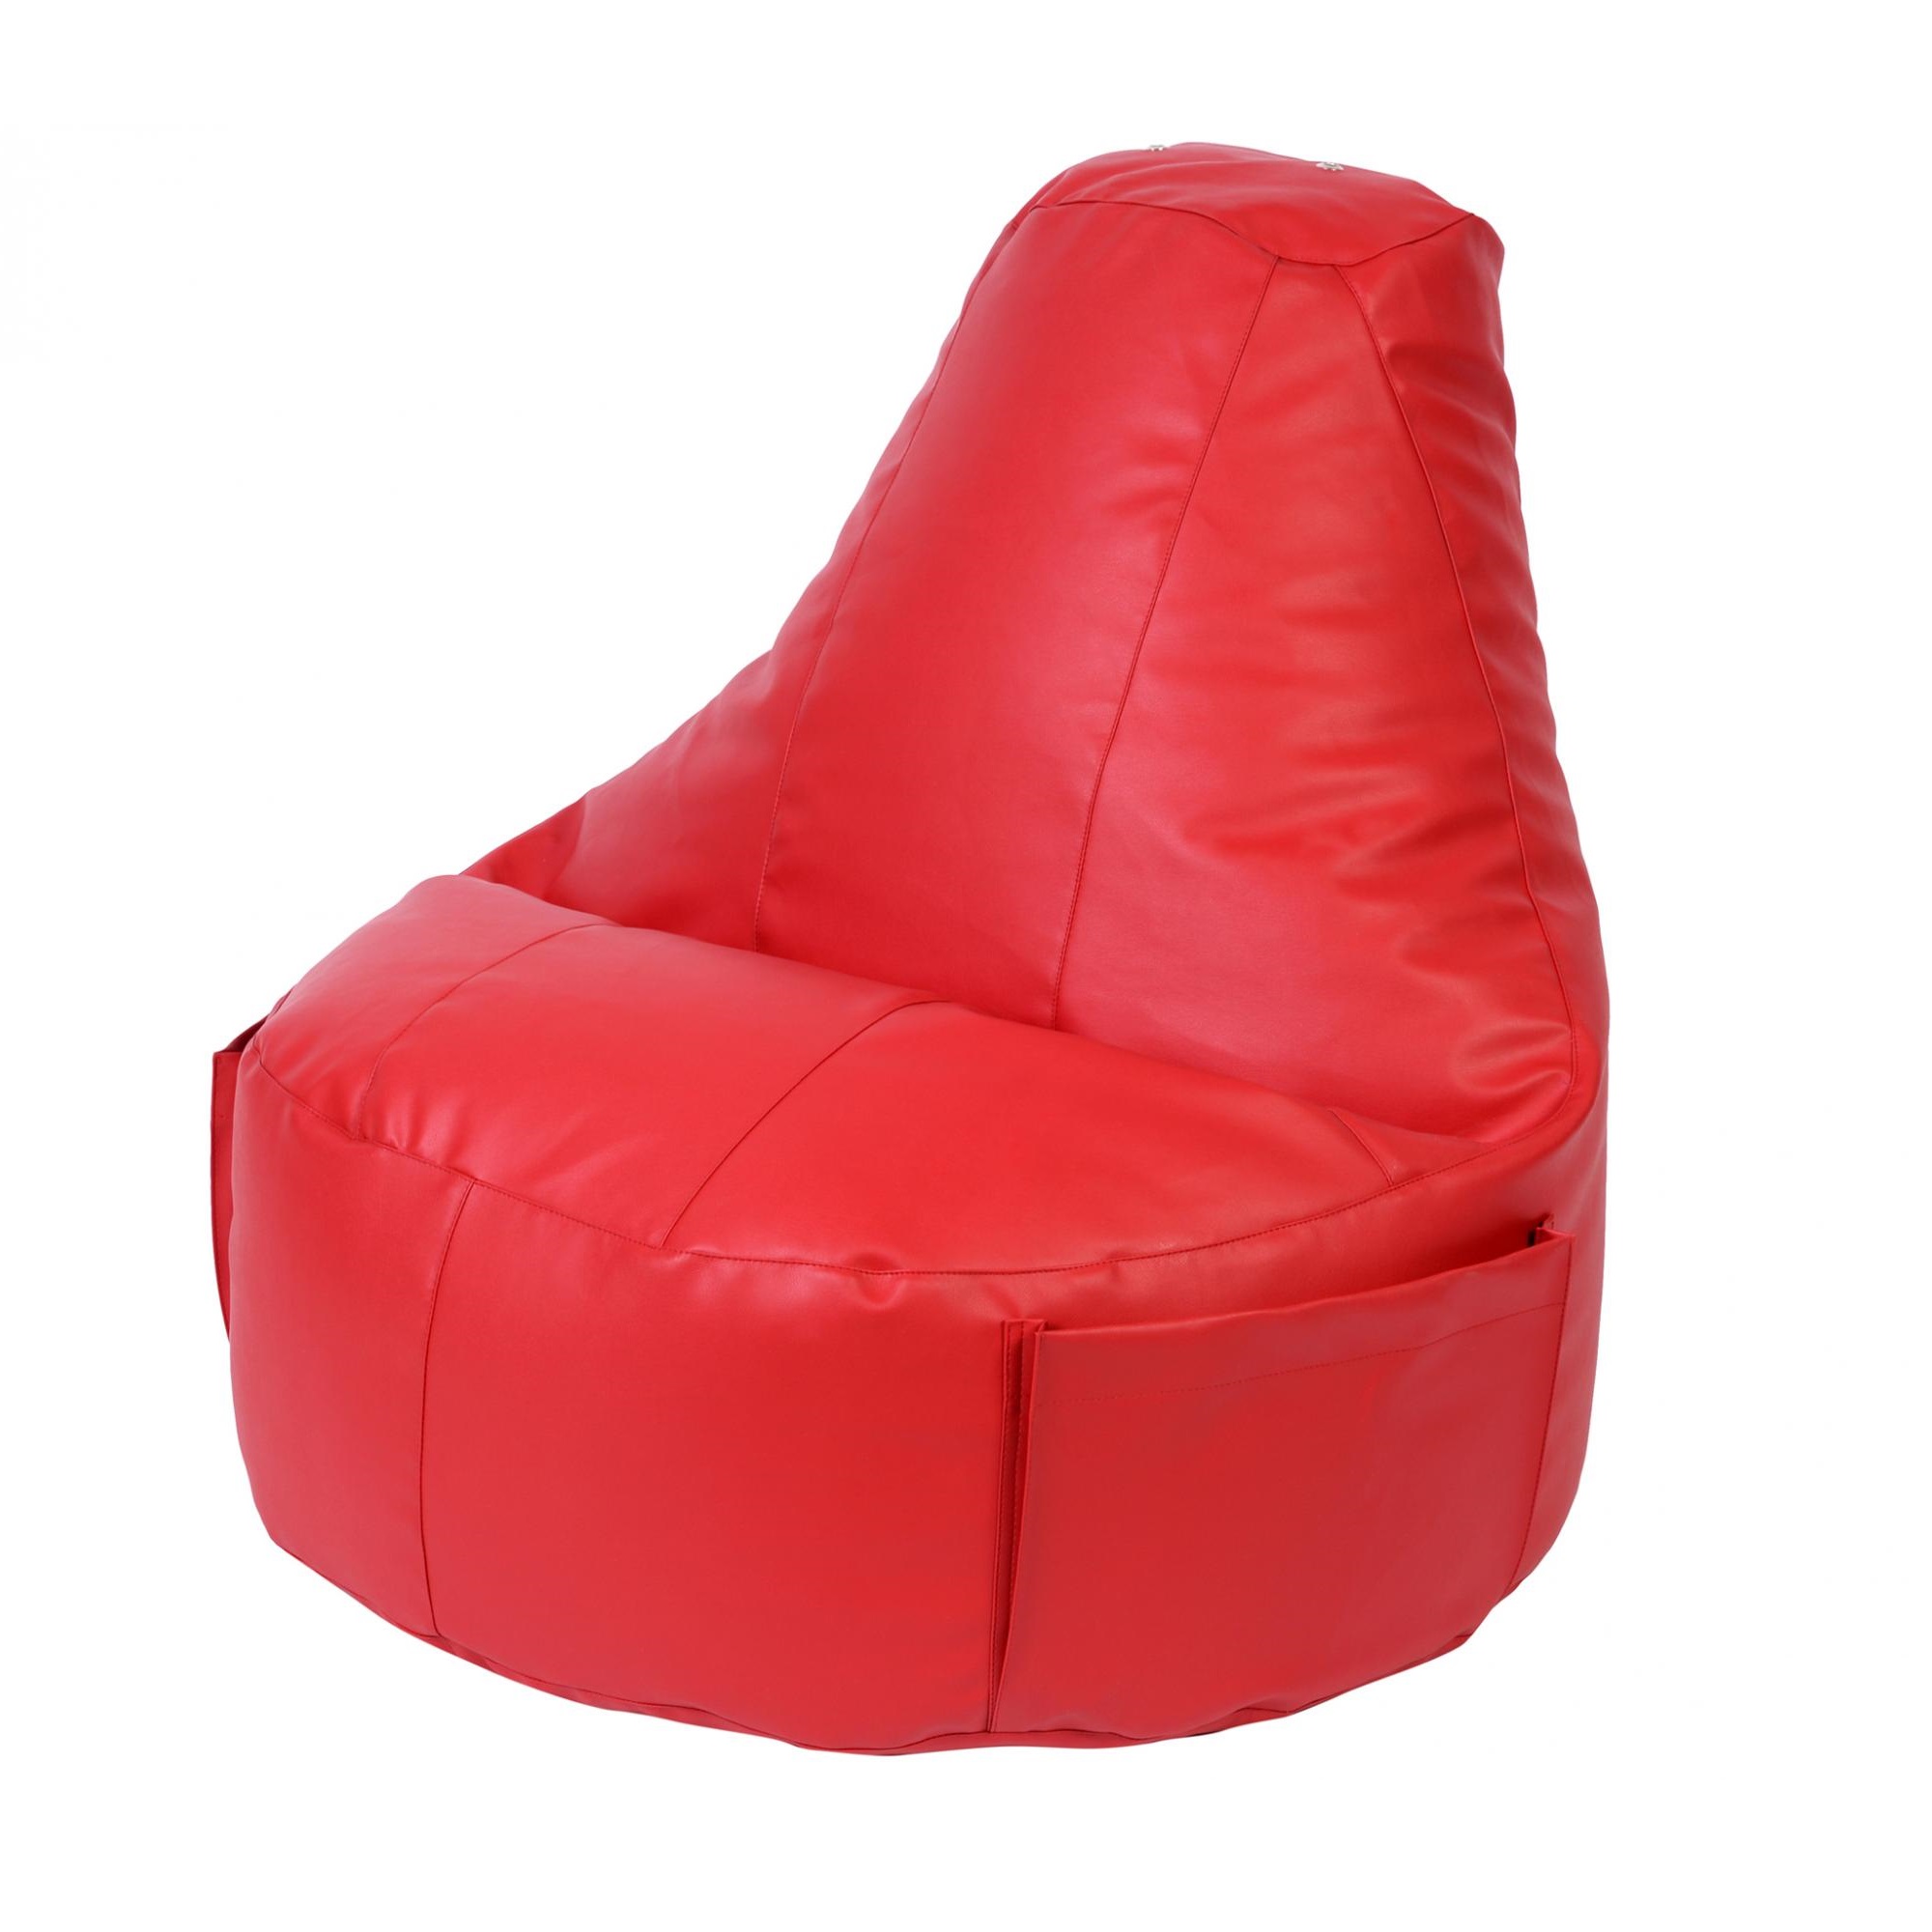 Кресло Dreambag Comfort красное экокожа 150x90 см кресло dreambag comfort красное экокожа 150x90 см